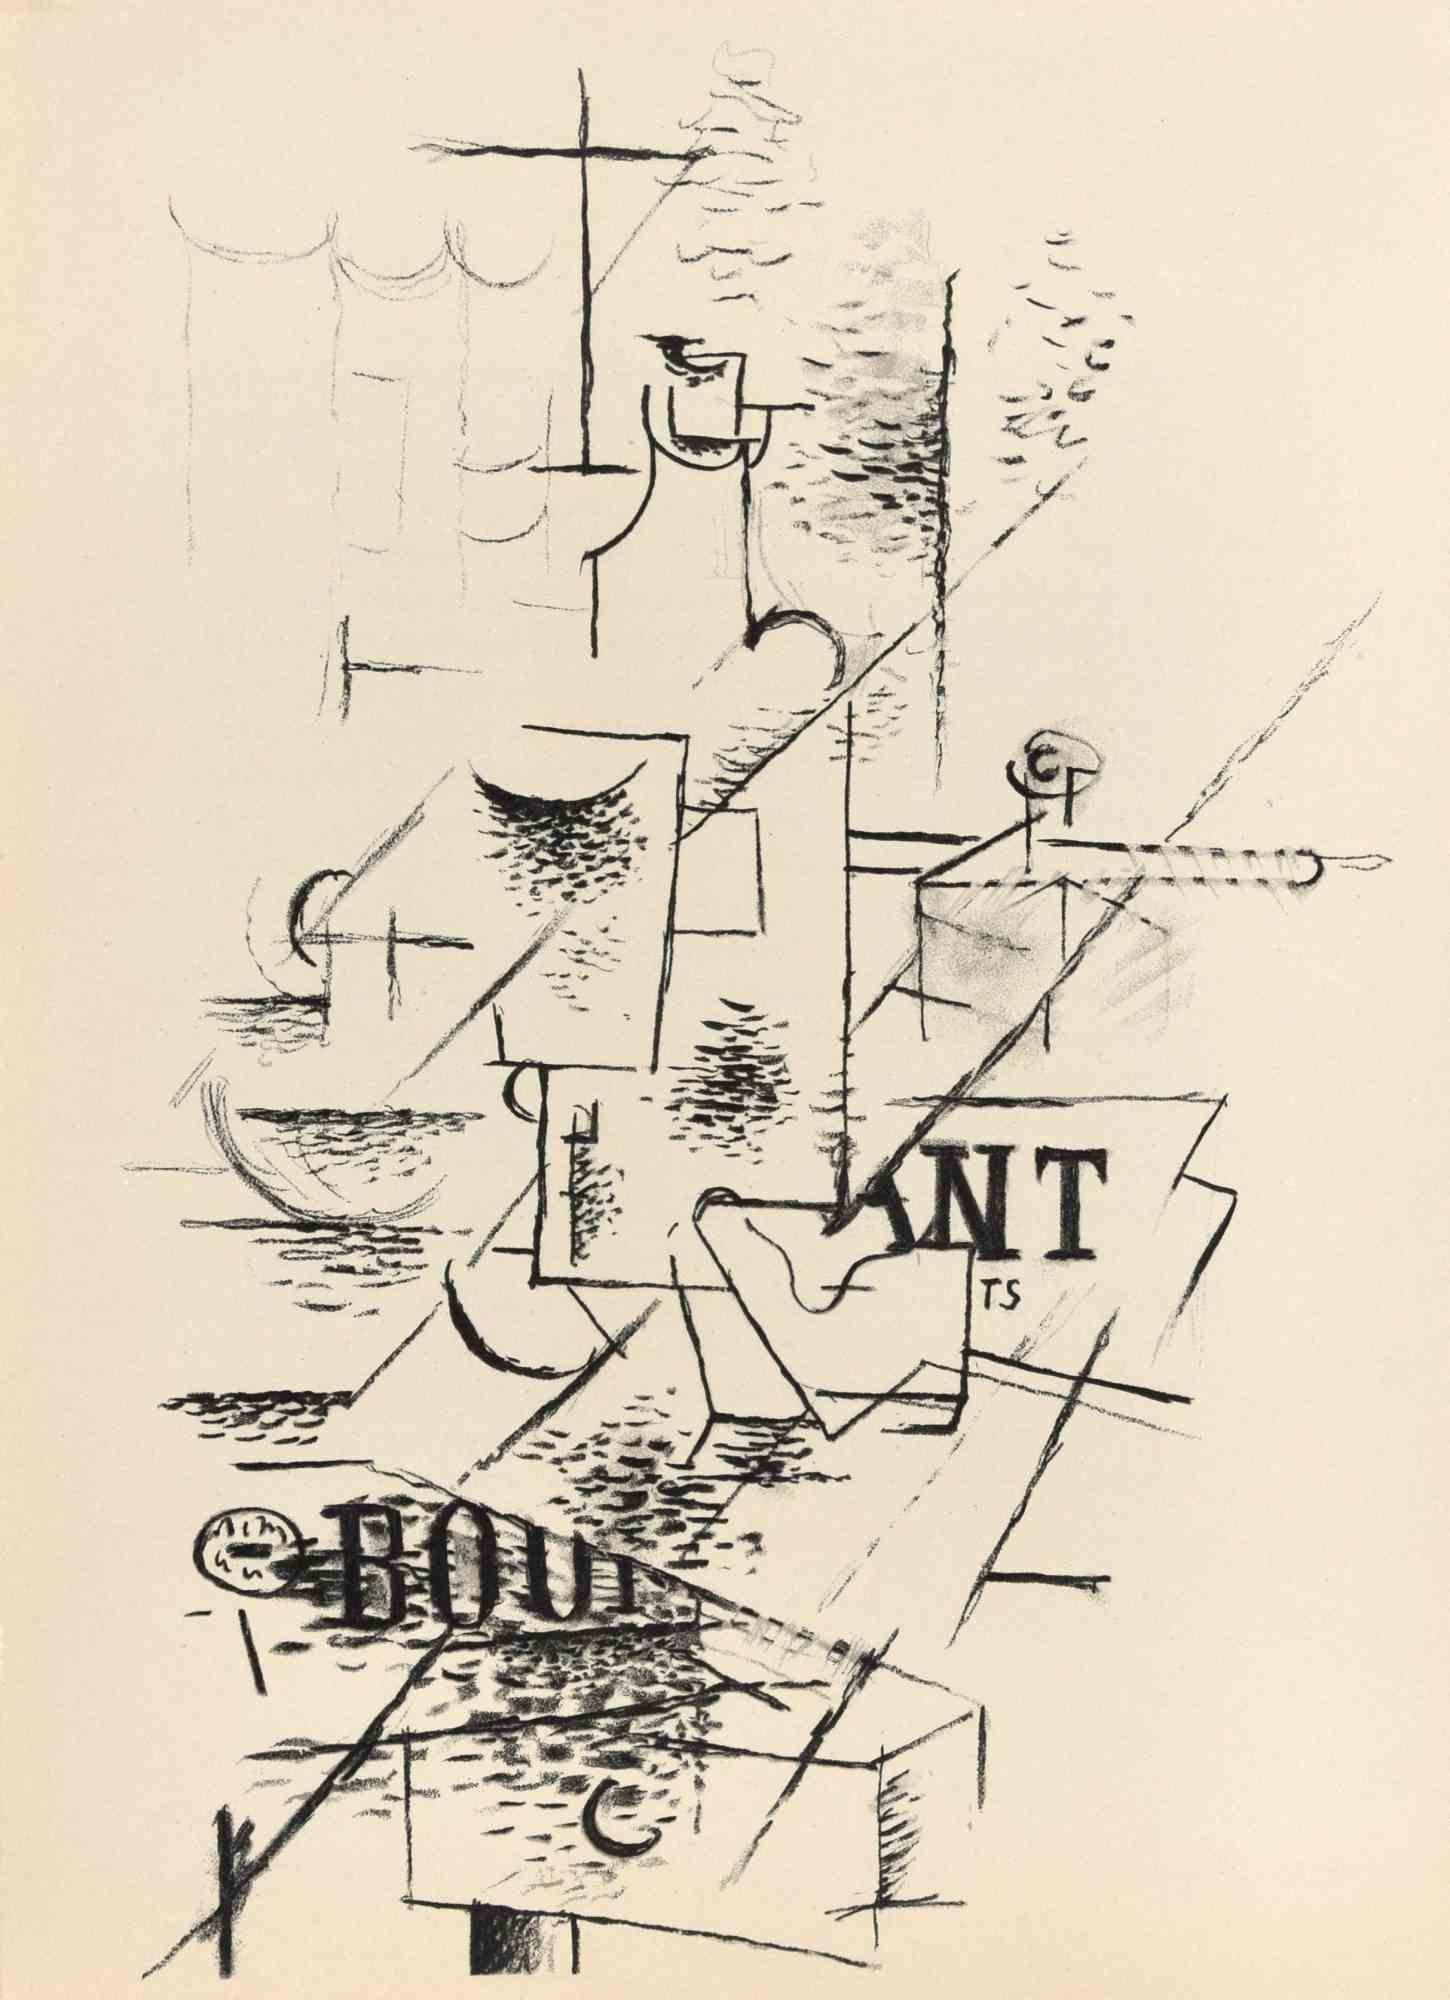 La Bouteille ist eine Lithographie nach einem grafischen Werk von Georges Braque aus dem Jahr 1911.

Gute Bedingungen.

Dieser Druck stammt aus der Mappe Derrière Le Miroir Nr. 138 S.7. Herausgegeben von Maeght und gedruckt von Mourlot im Jahr